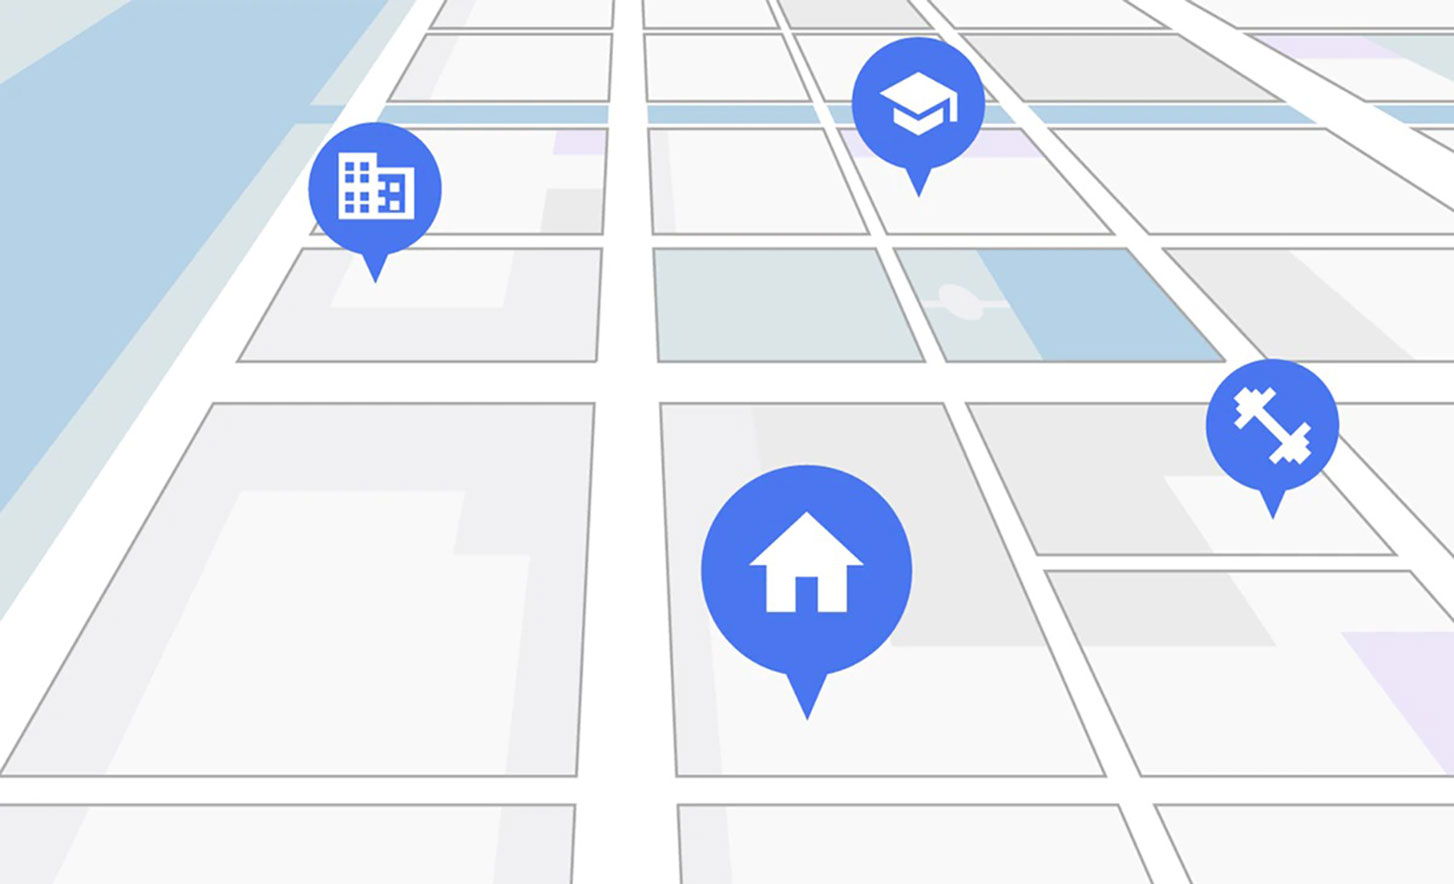 תמונה של מפה עם סמלי בית, משרד, בית ספר וחדר כושר